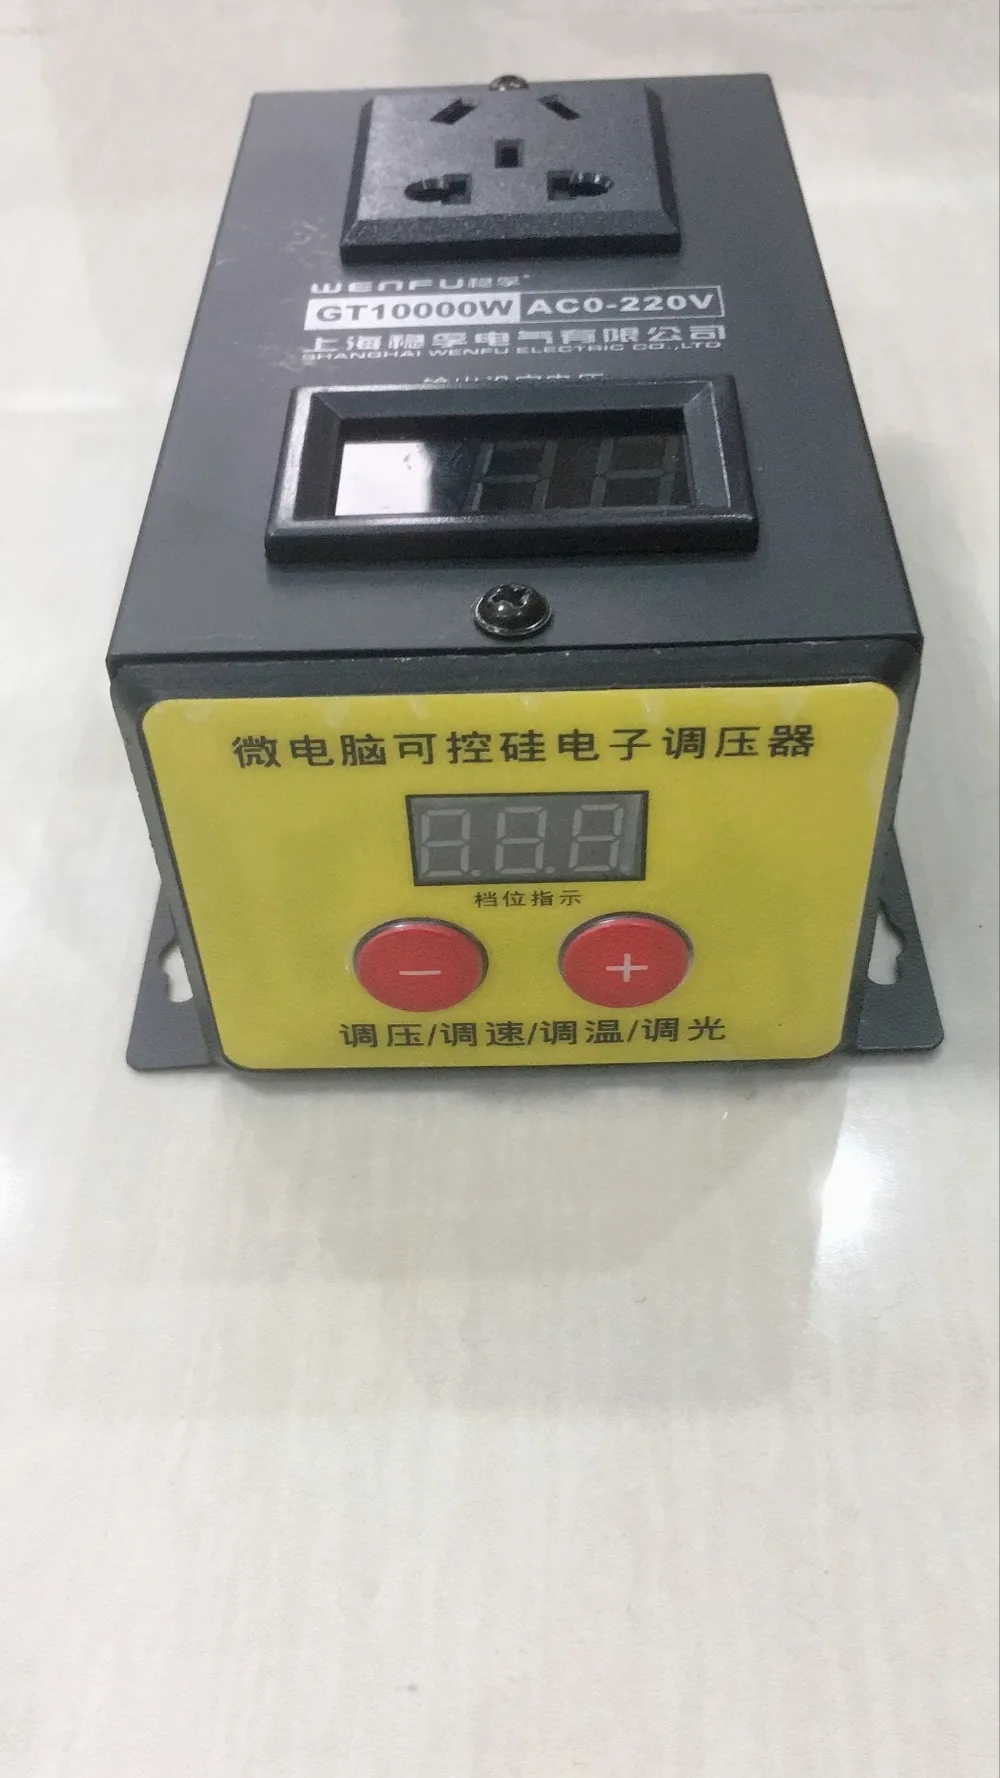 AC 220V 10000W SCR Электронный регулятор напряжения Температура Скорость Регулируемый контроллер регулятор света термостат